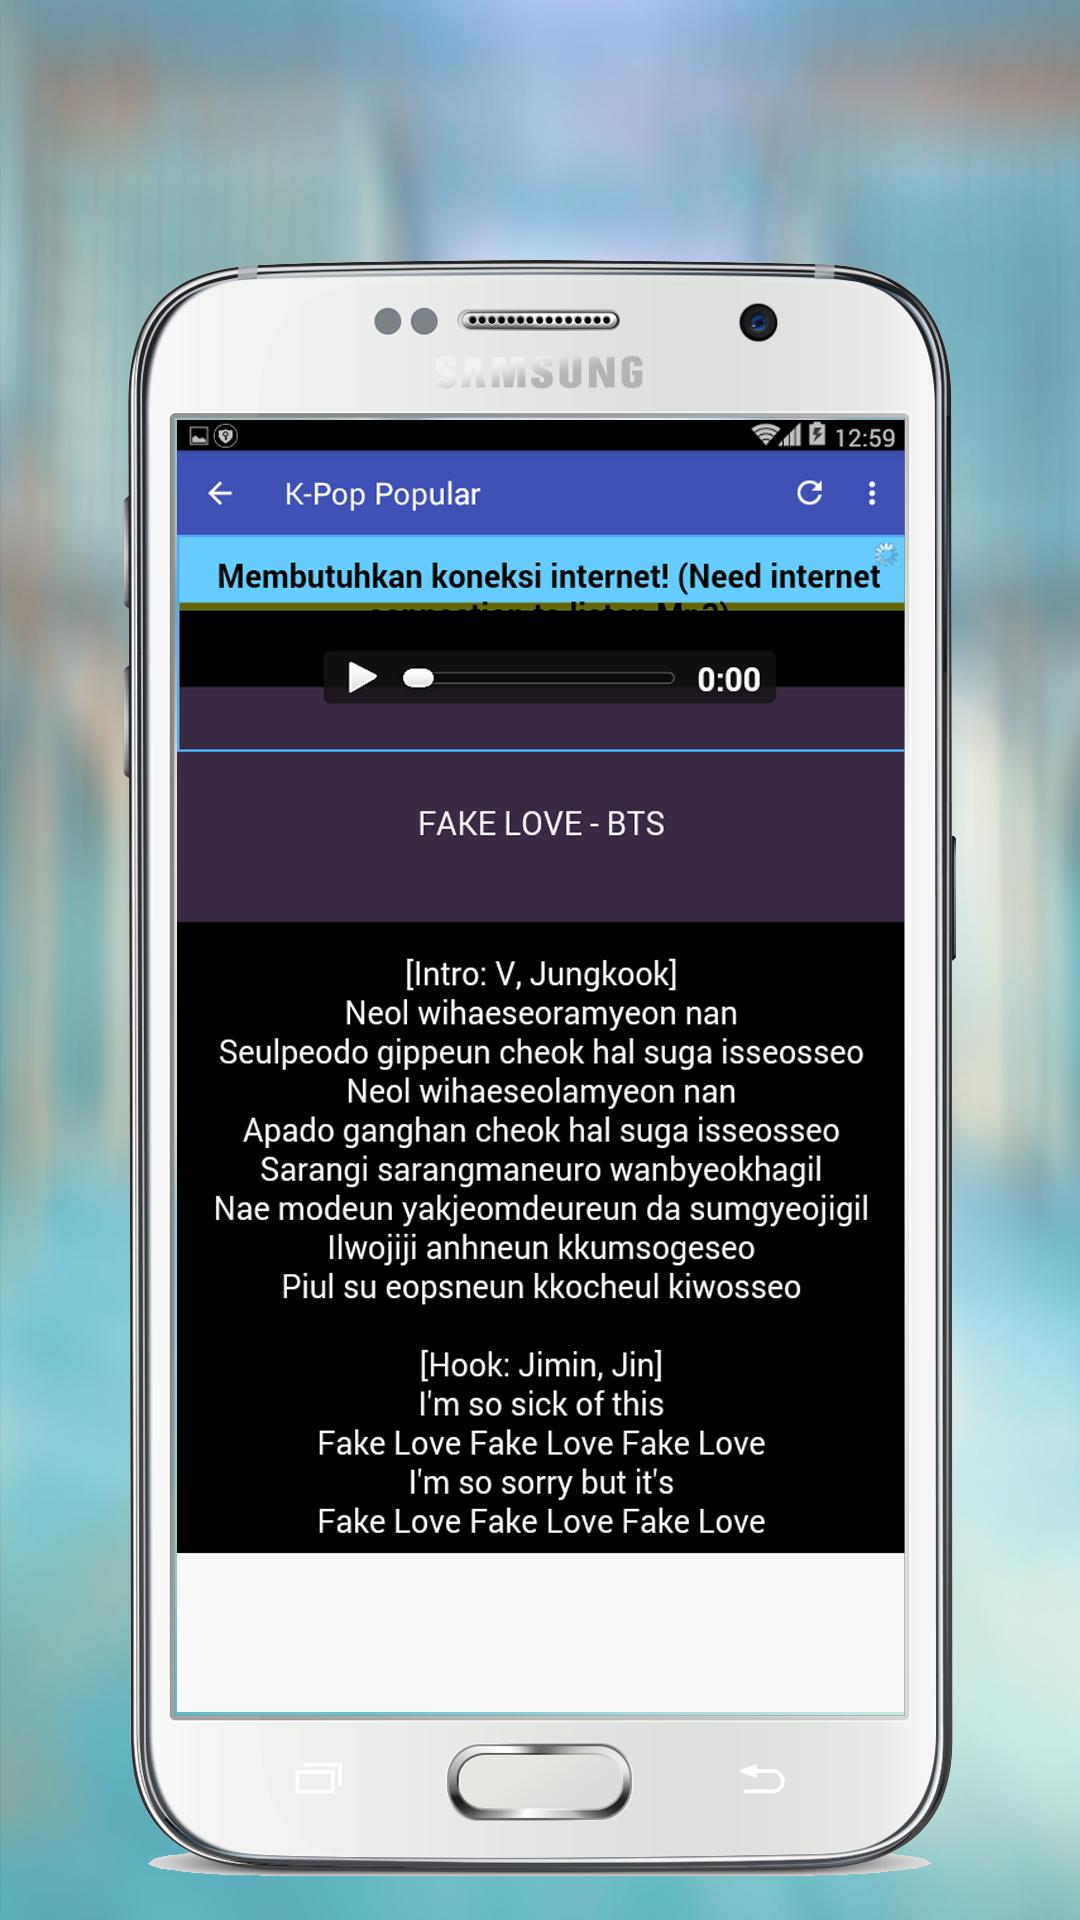 BTS - FAKE LOVE Mp3 APK pour Android Télécharger